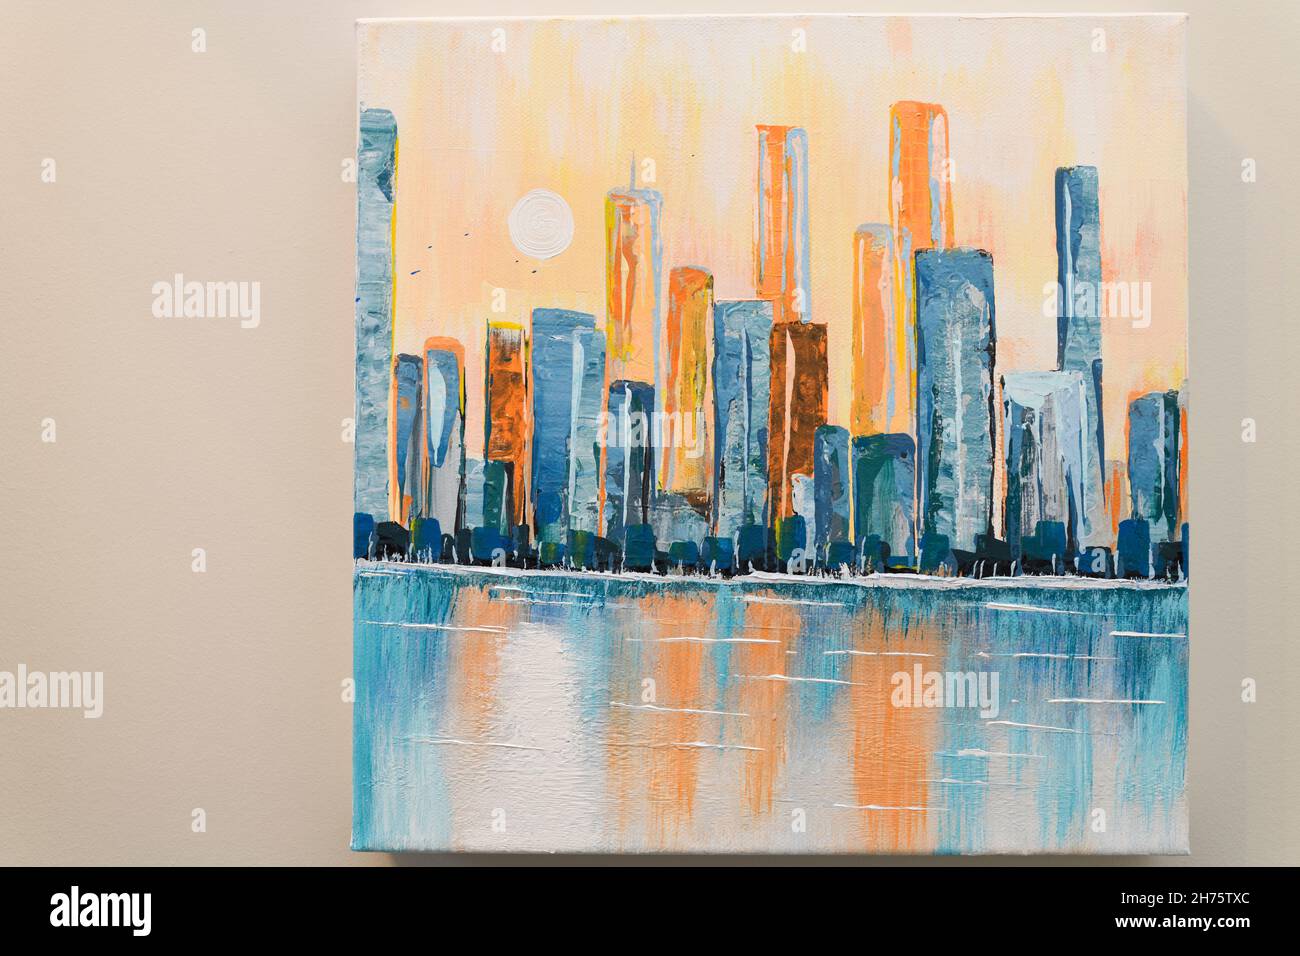 Peinture acrylique abstraite sur toile d'horizon urbain avec tours hautes reflétées dans l'eau et le soleil Banque D'Images